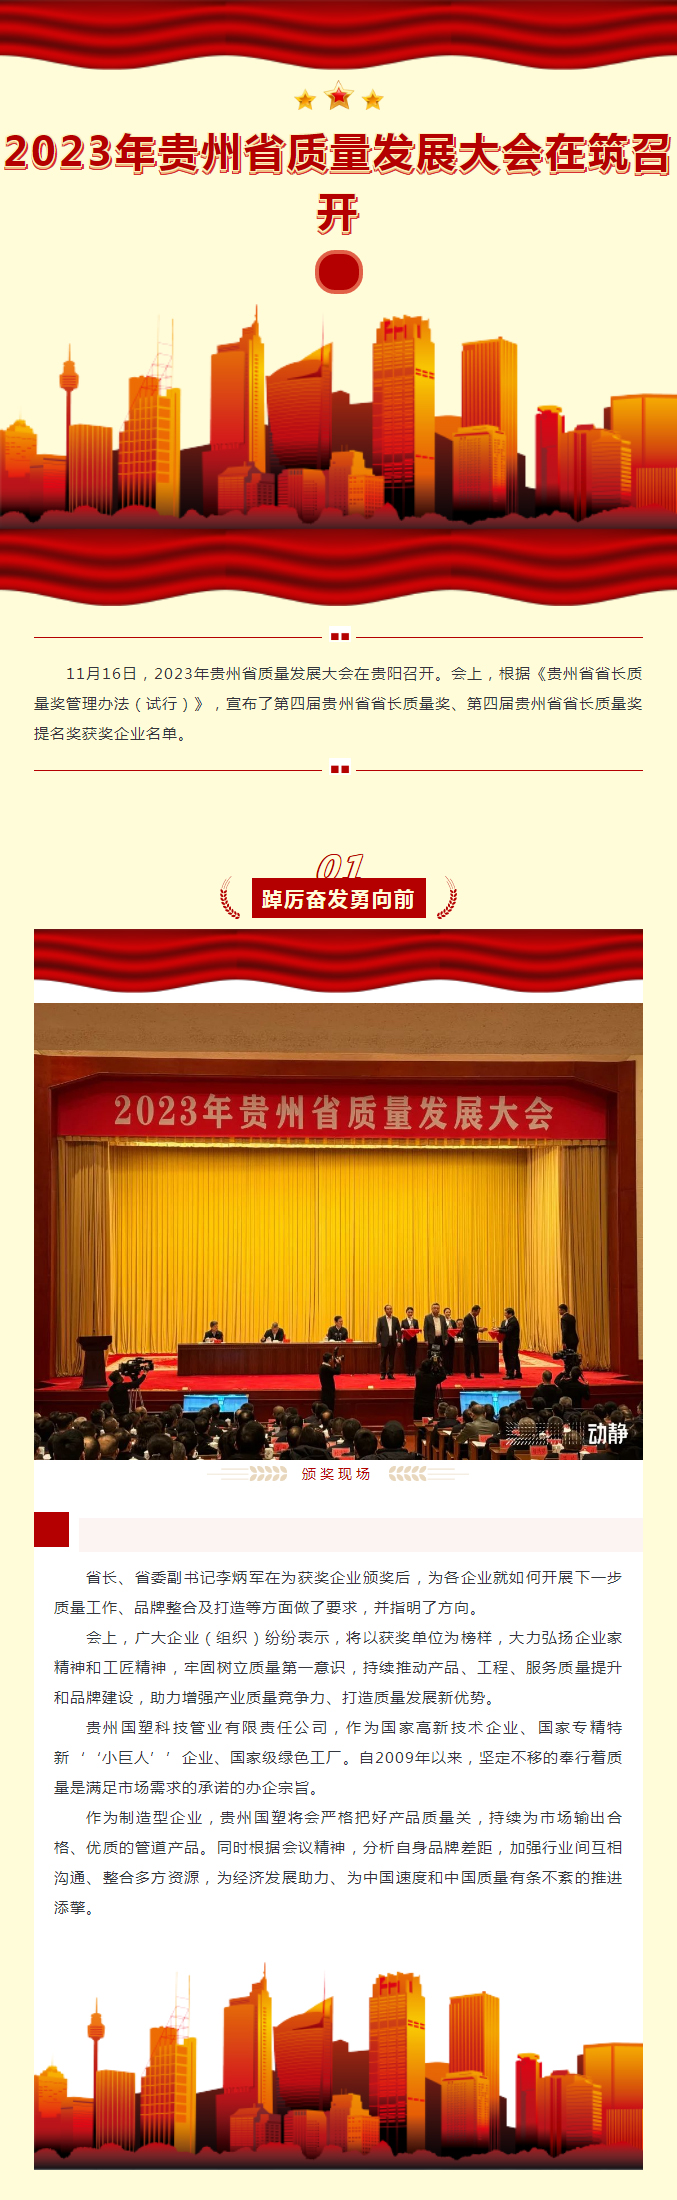 2023年贵州省质量发展大会在筑召开.jpg